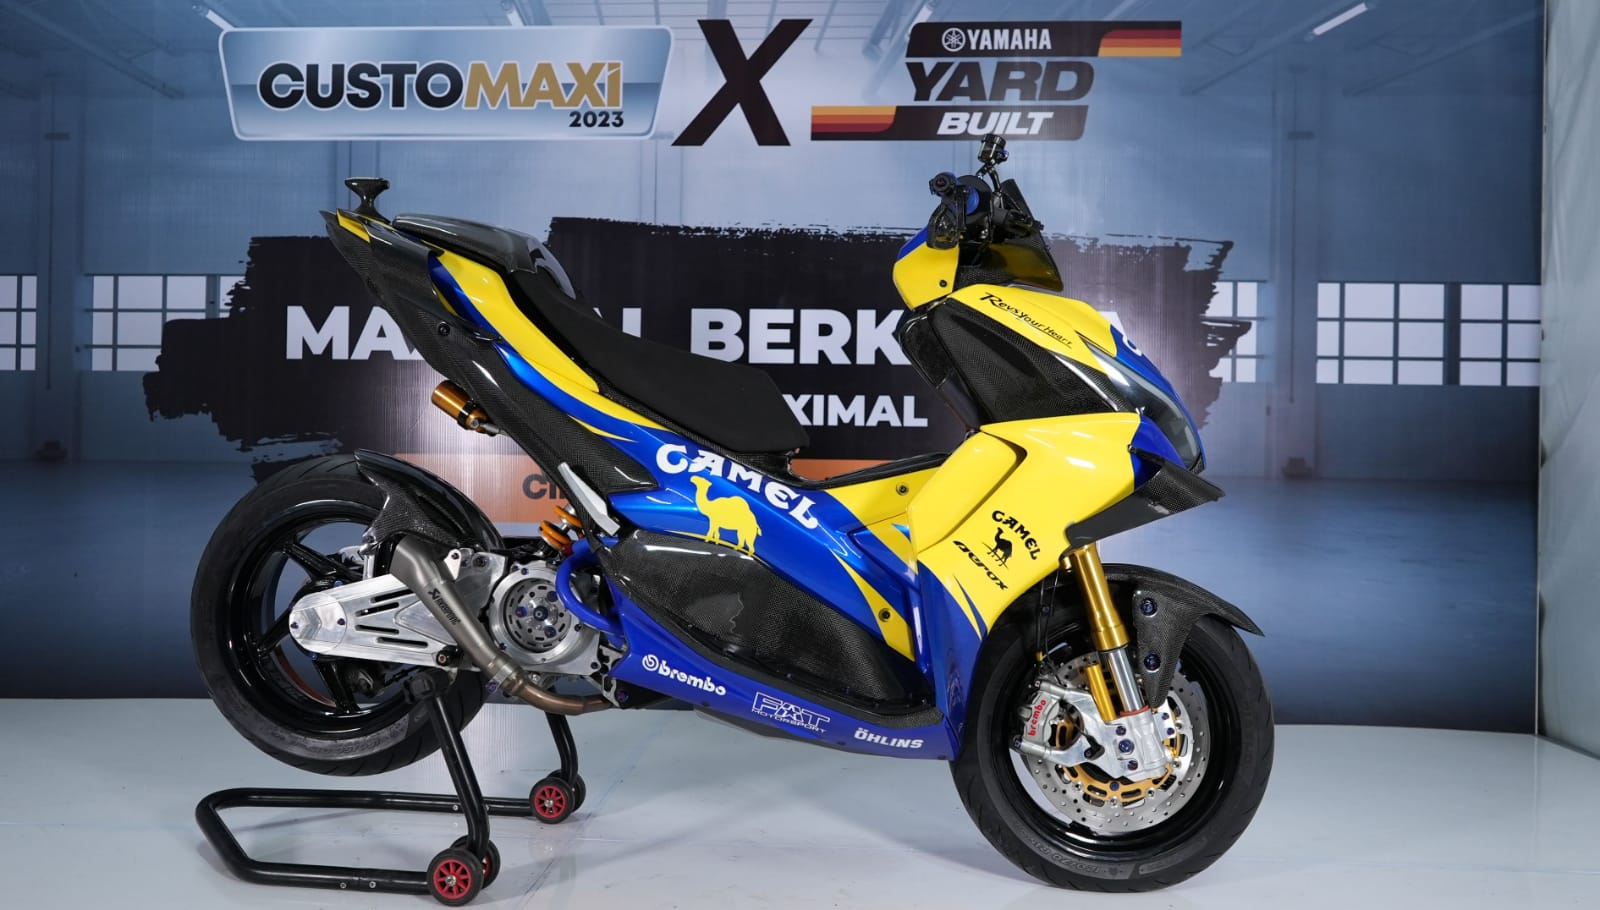 Serasa Motor Valentino Rossi, Ini Sentuhan Modifikasi Yamaha Aerox yang Juarai Customaxi & Yard Built 2023